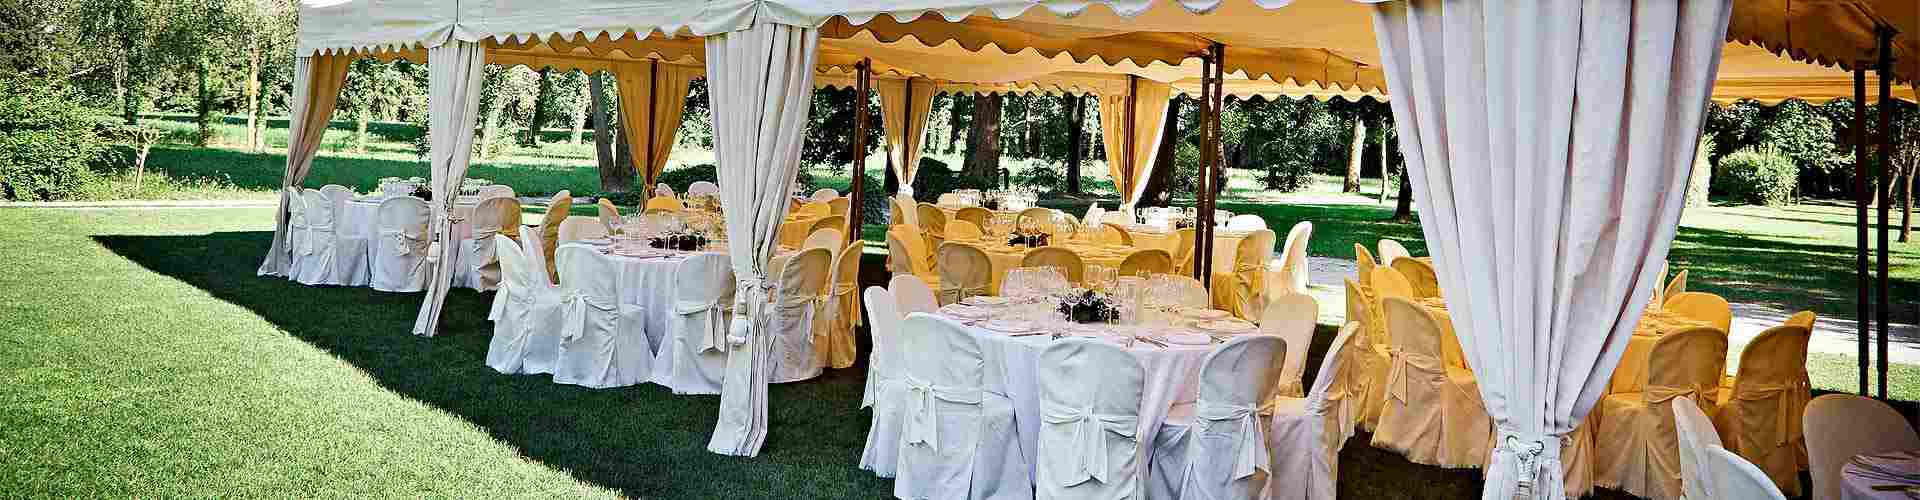 Restaurantes para bodas 2020 en Cormenzana